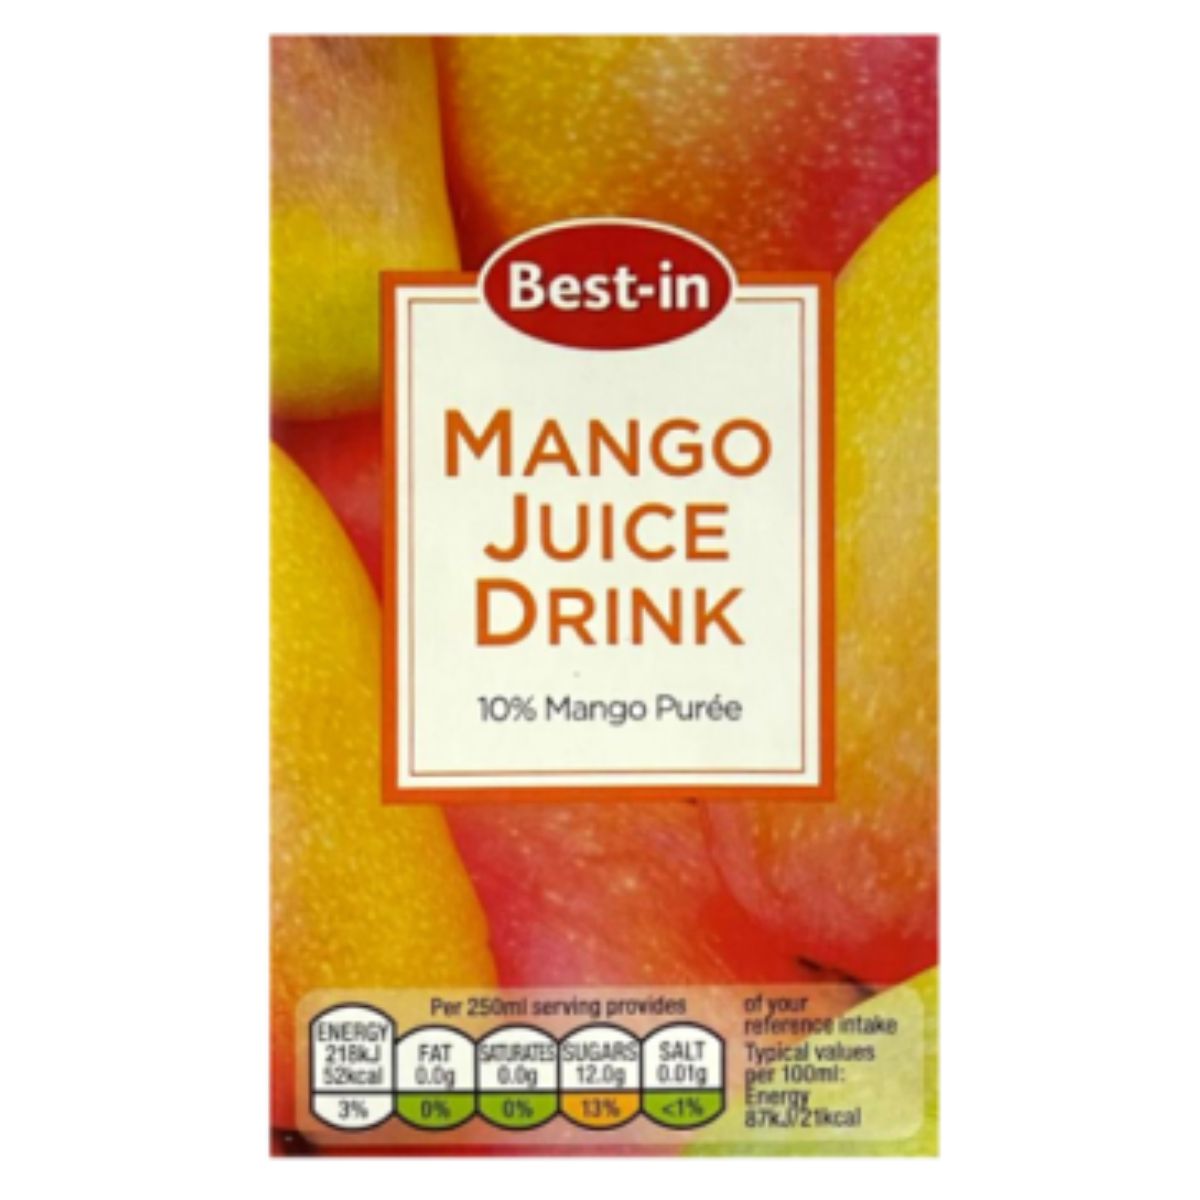 Best In - Mango Juice Drink - 250ml is the best in mango juice drink.